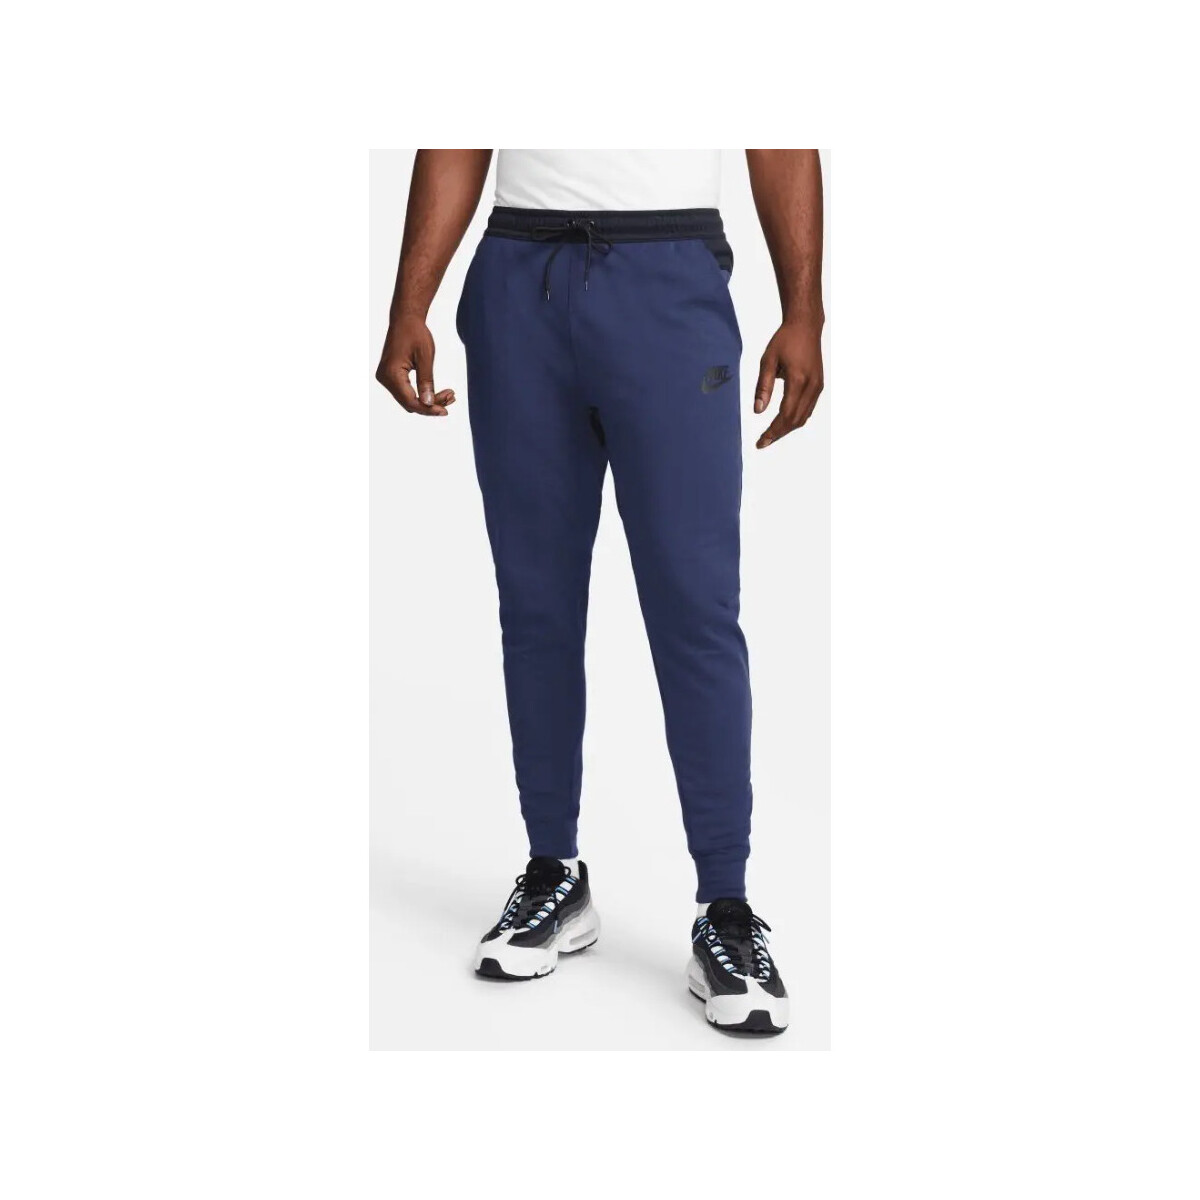 Vêtements Homme Pantalons Nike - Pantalon de jogging - marine Autres